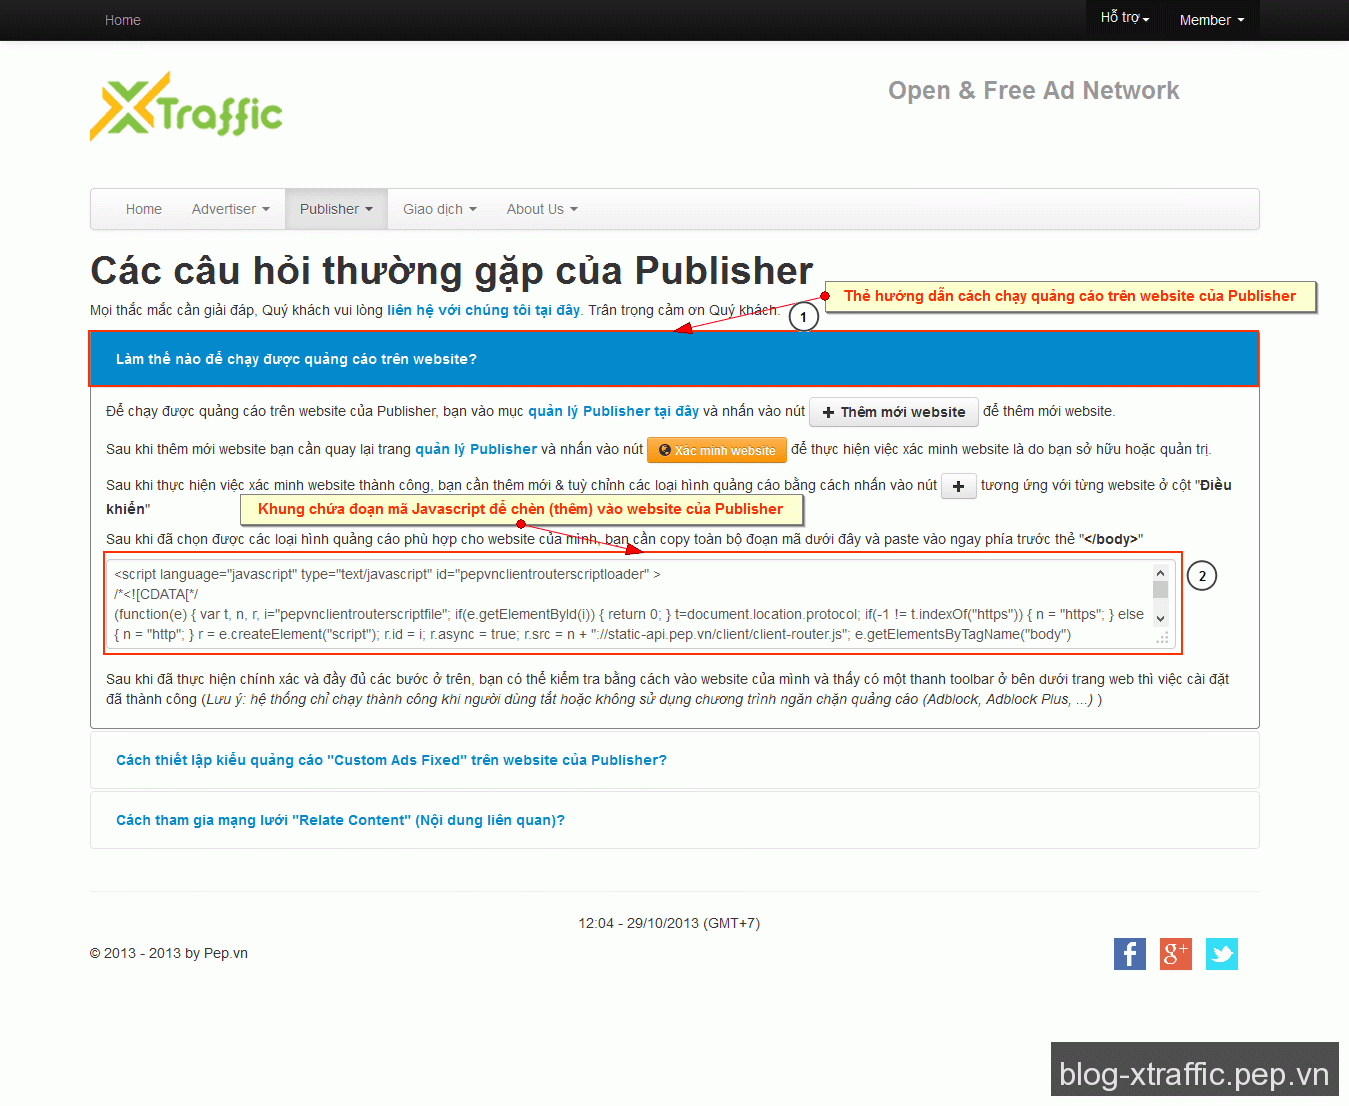 [Publisher] Hướng dẫn đăng ký & sử dụng các chức năng cơ bản của Publisher - publisher xtraffic - Hướng dẫn về Publisher Hướng dẫn xTraffic xTraffic